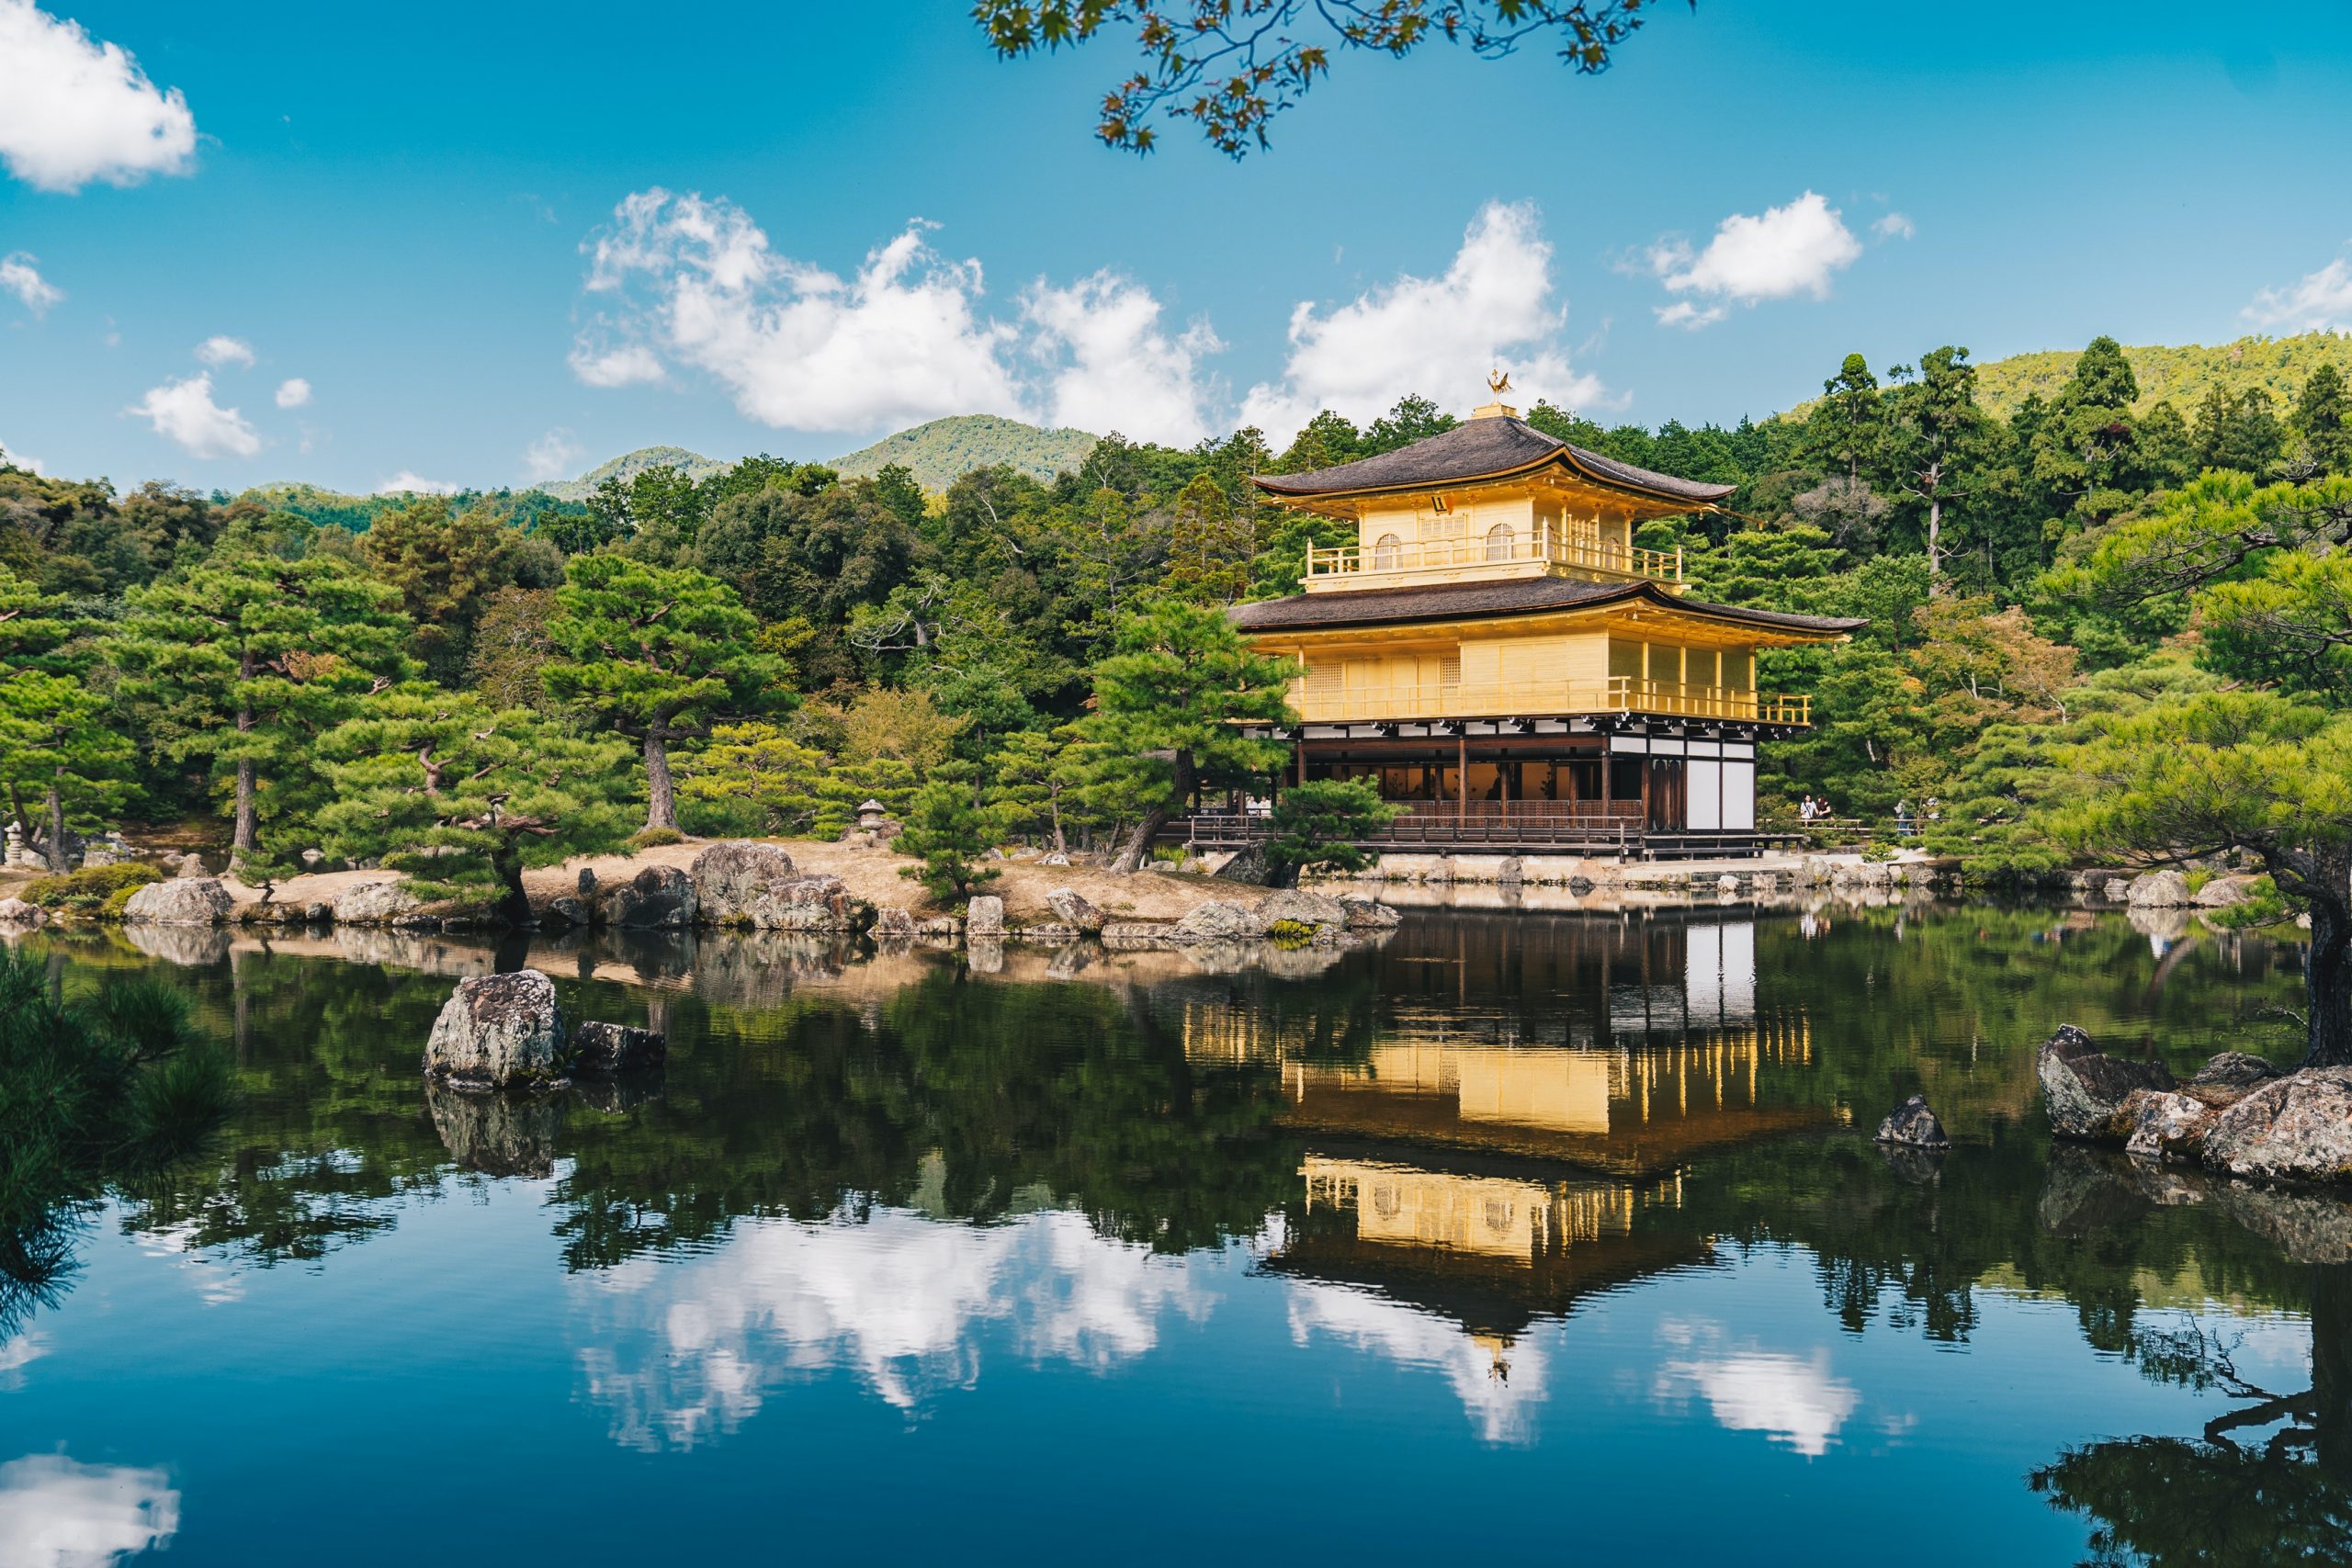 Golden pavilion in Kyoto, Japan